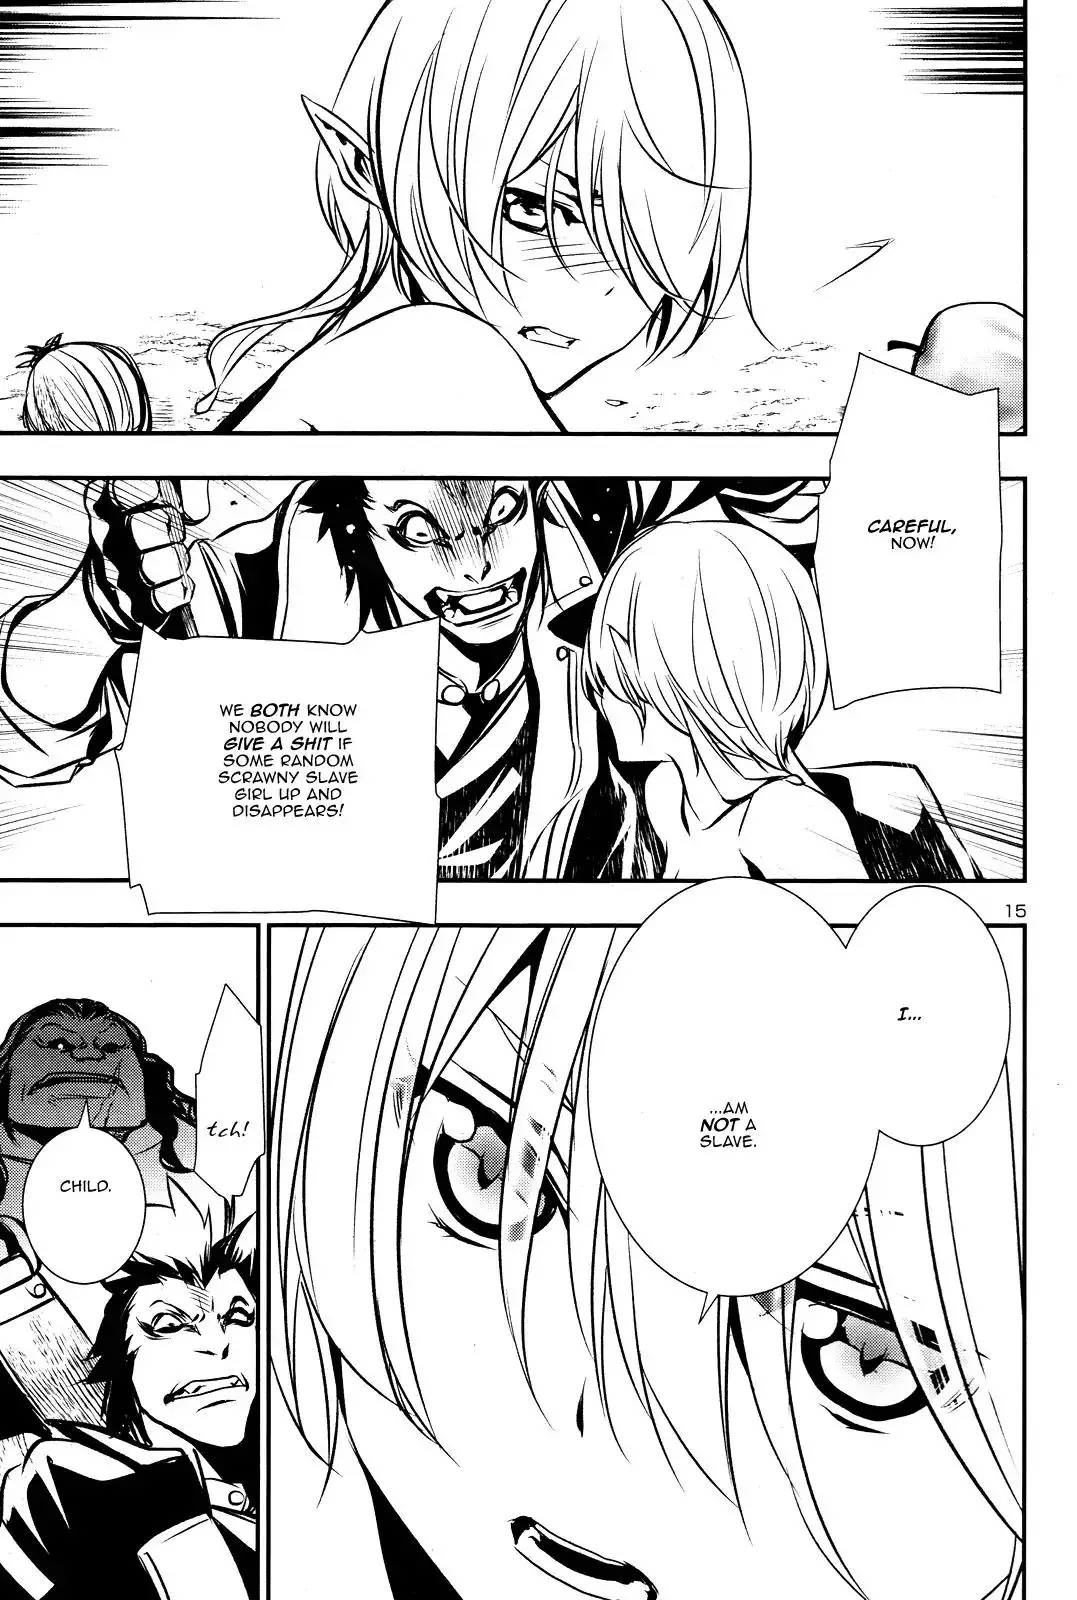 Shinju no Nectar - 14 page 14